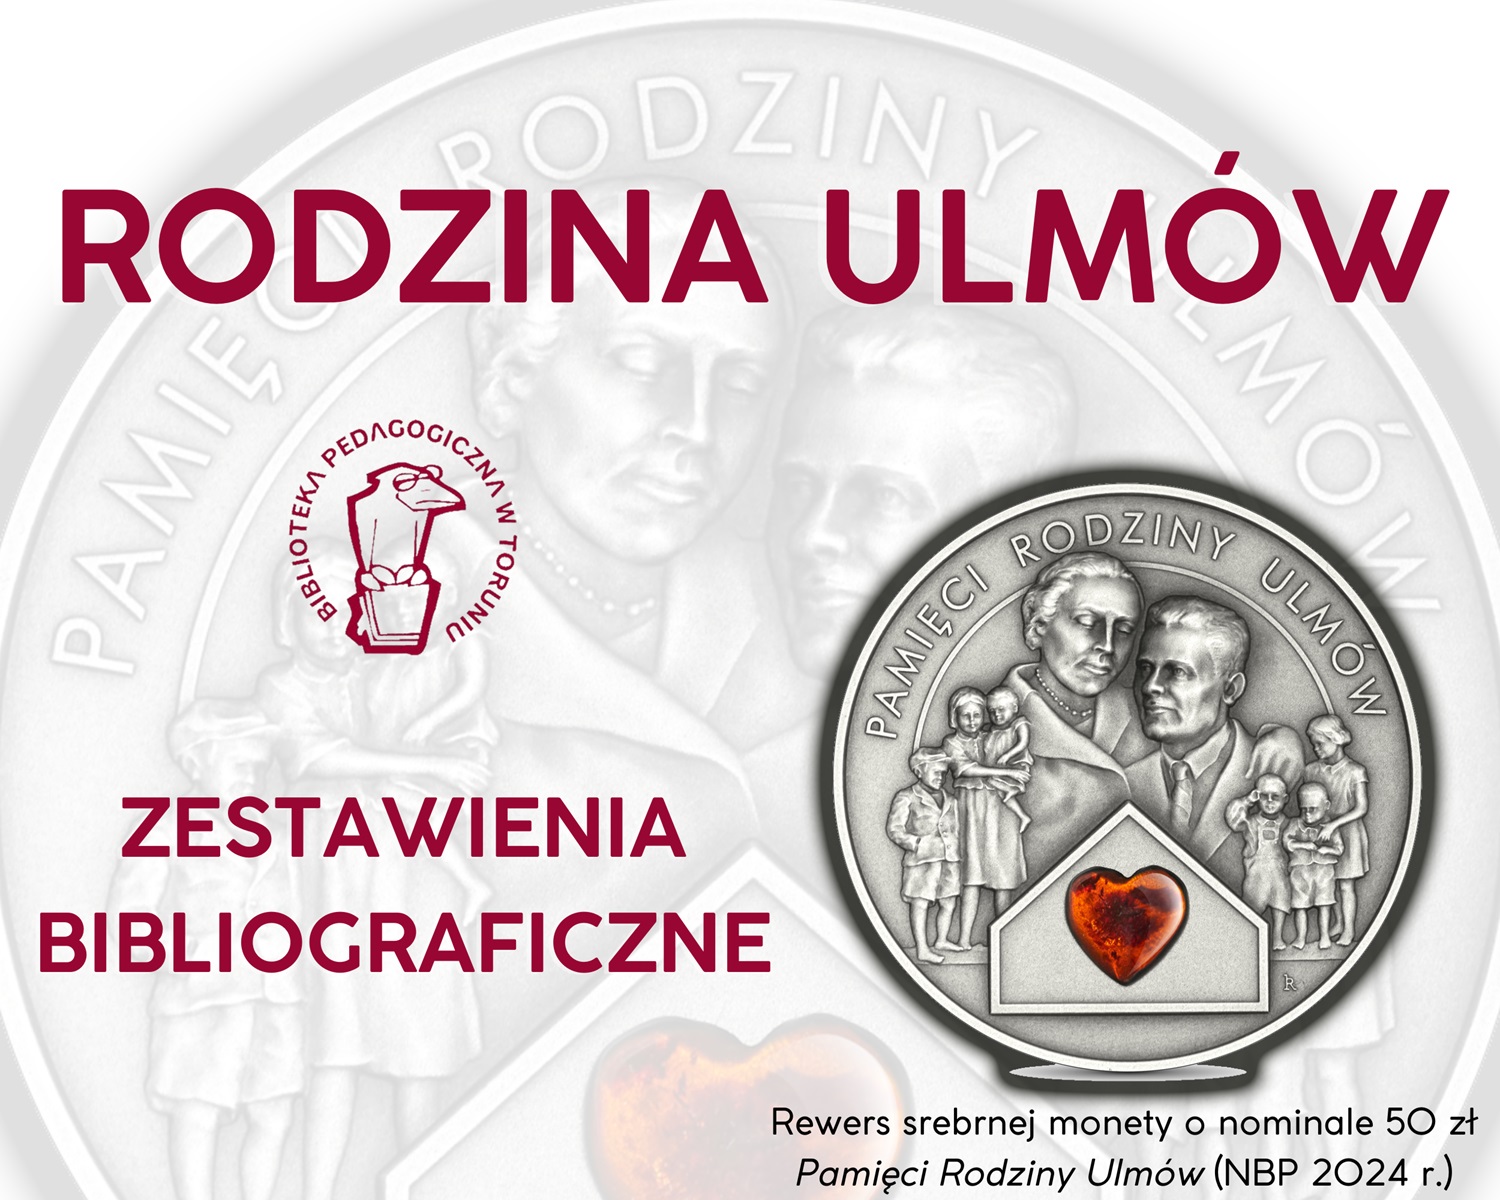 Bordowe napisy: Rodzina Ulmów - zestawienia bibliograficzne. W prawym dolnym rogu zdjęcie monety zatytułowanej: Pamięci Rodziny Ulmów.